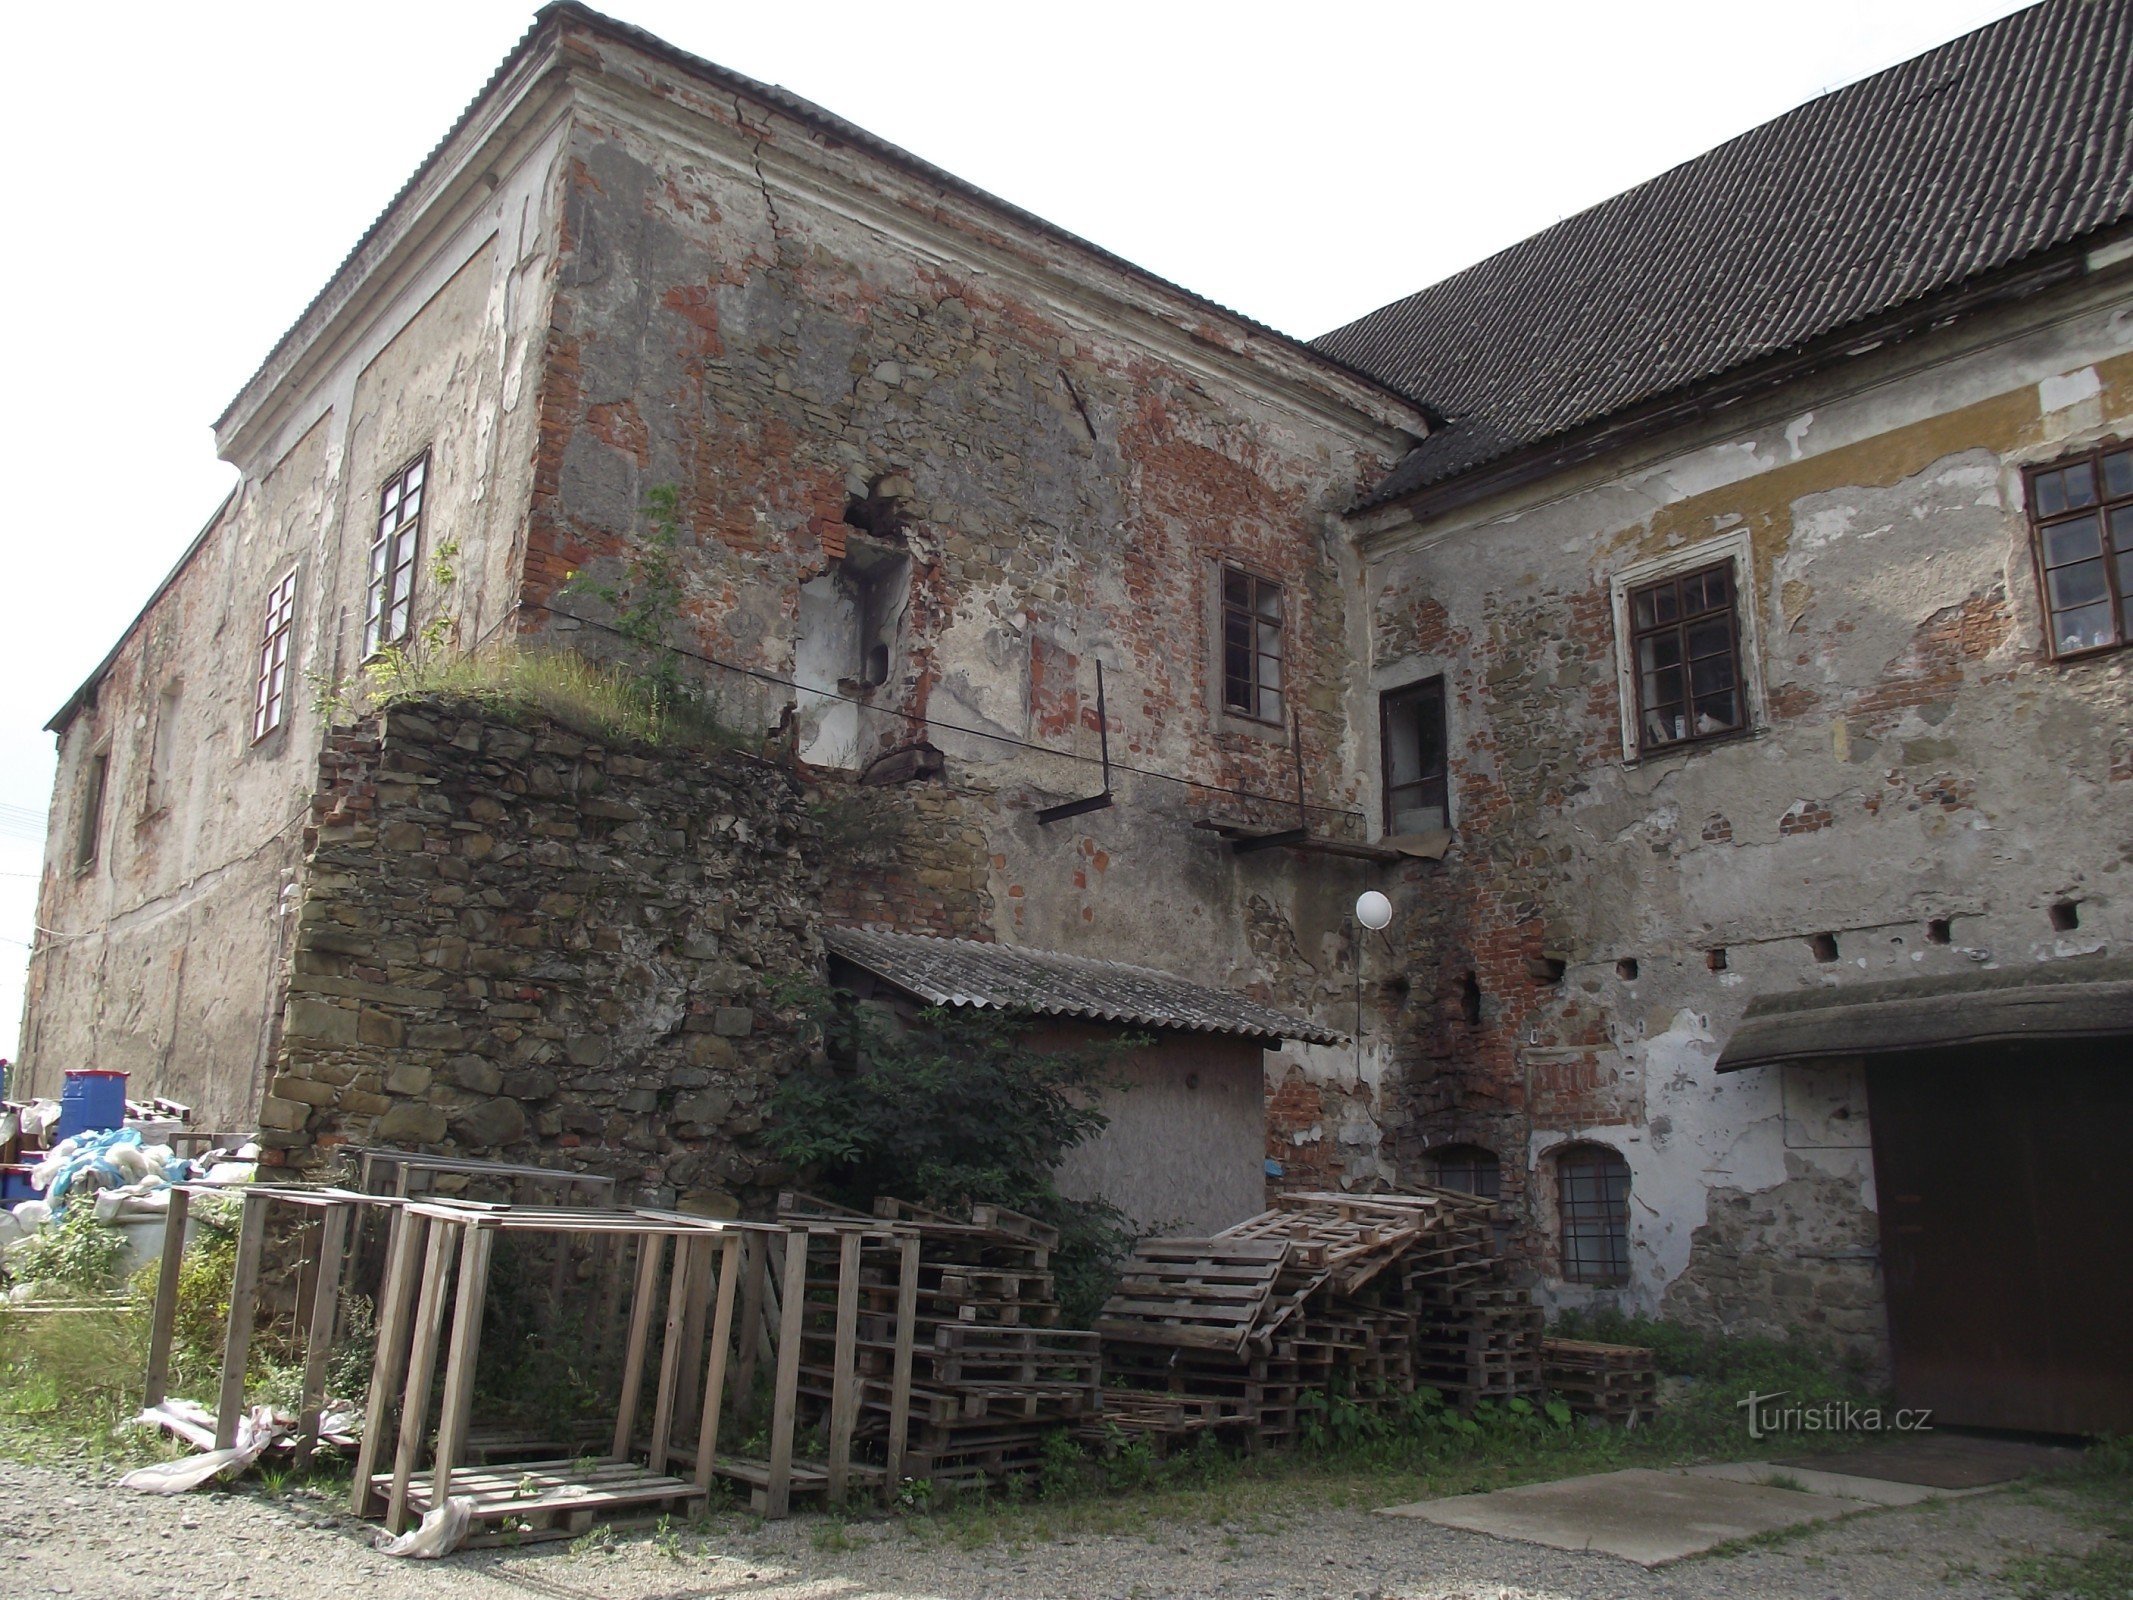 Doubravice (Moravičany) – castle